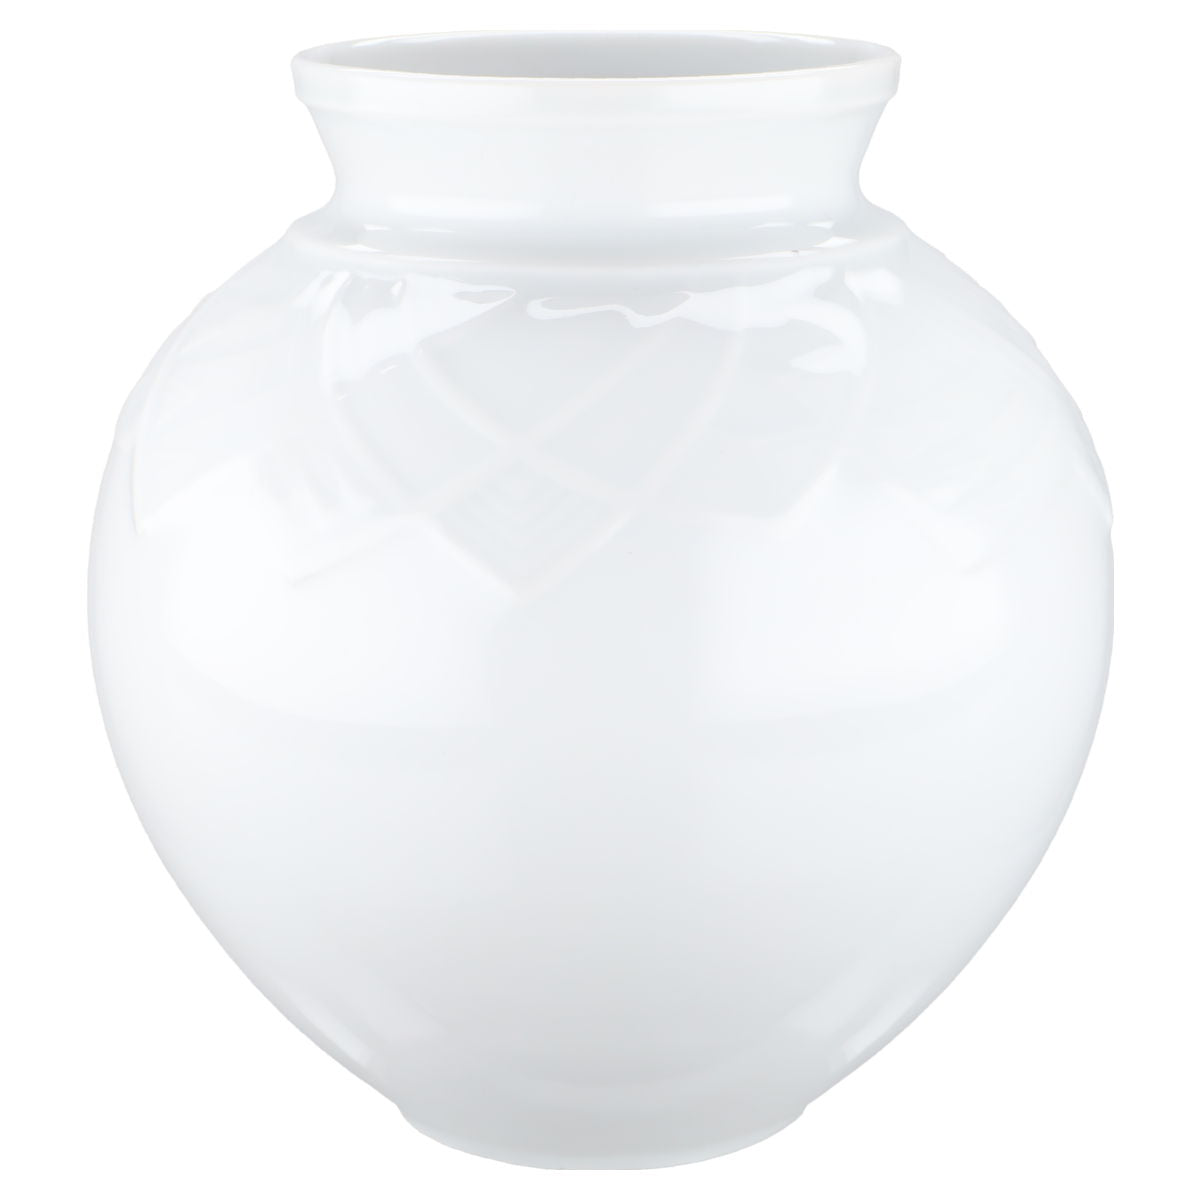 Vase bauchig weiß Reliefdekor Modell 6234